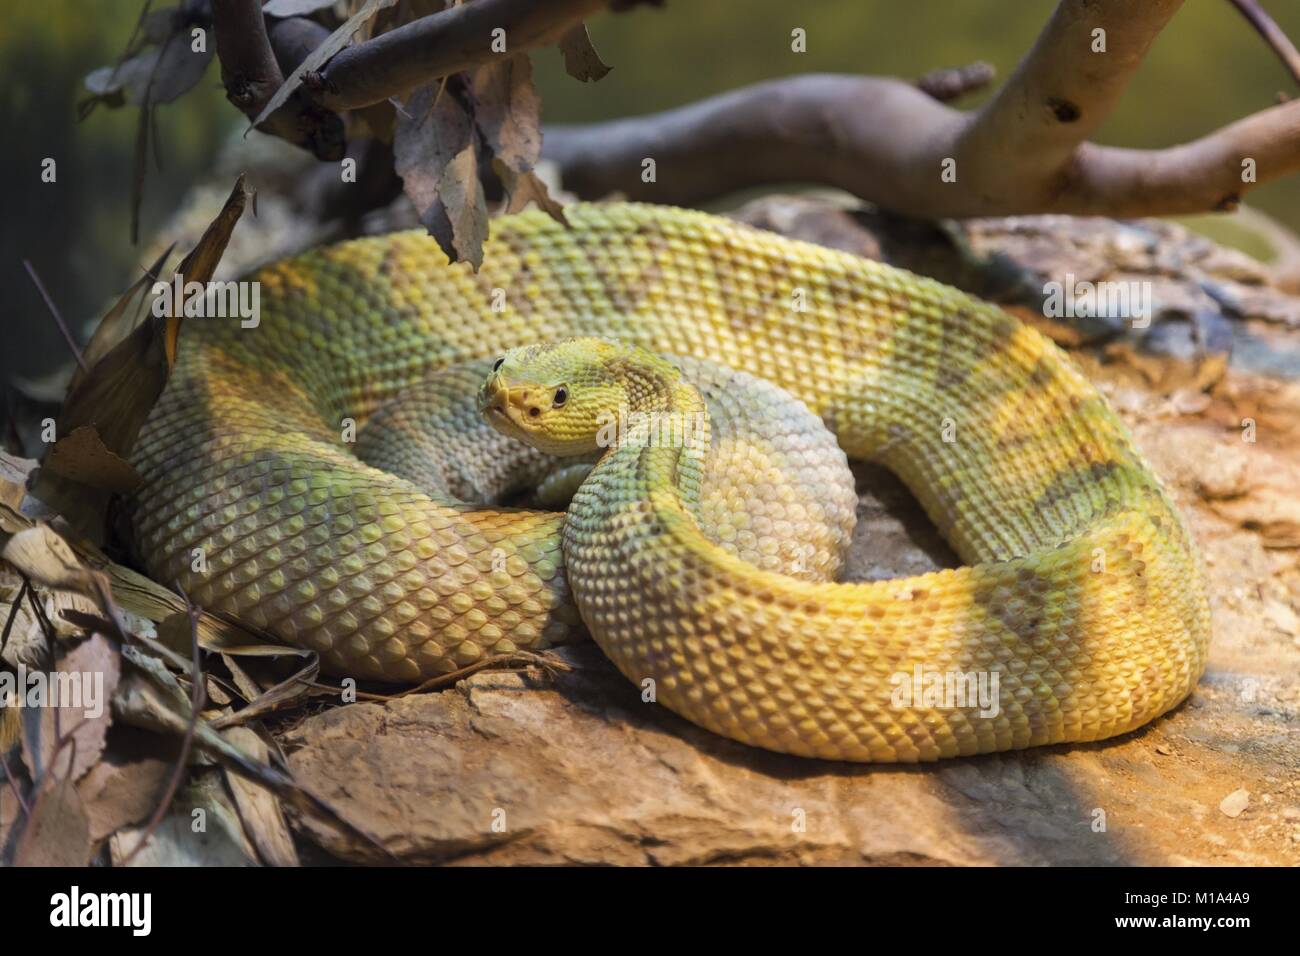 Zoo reptile house immagini e fotografie stock ad alta risoluzione - Alamy